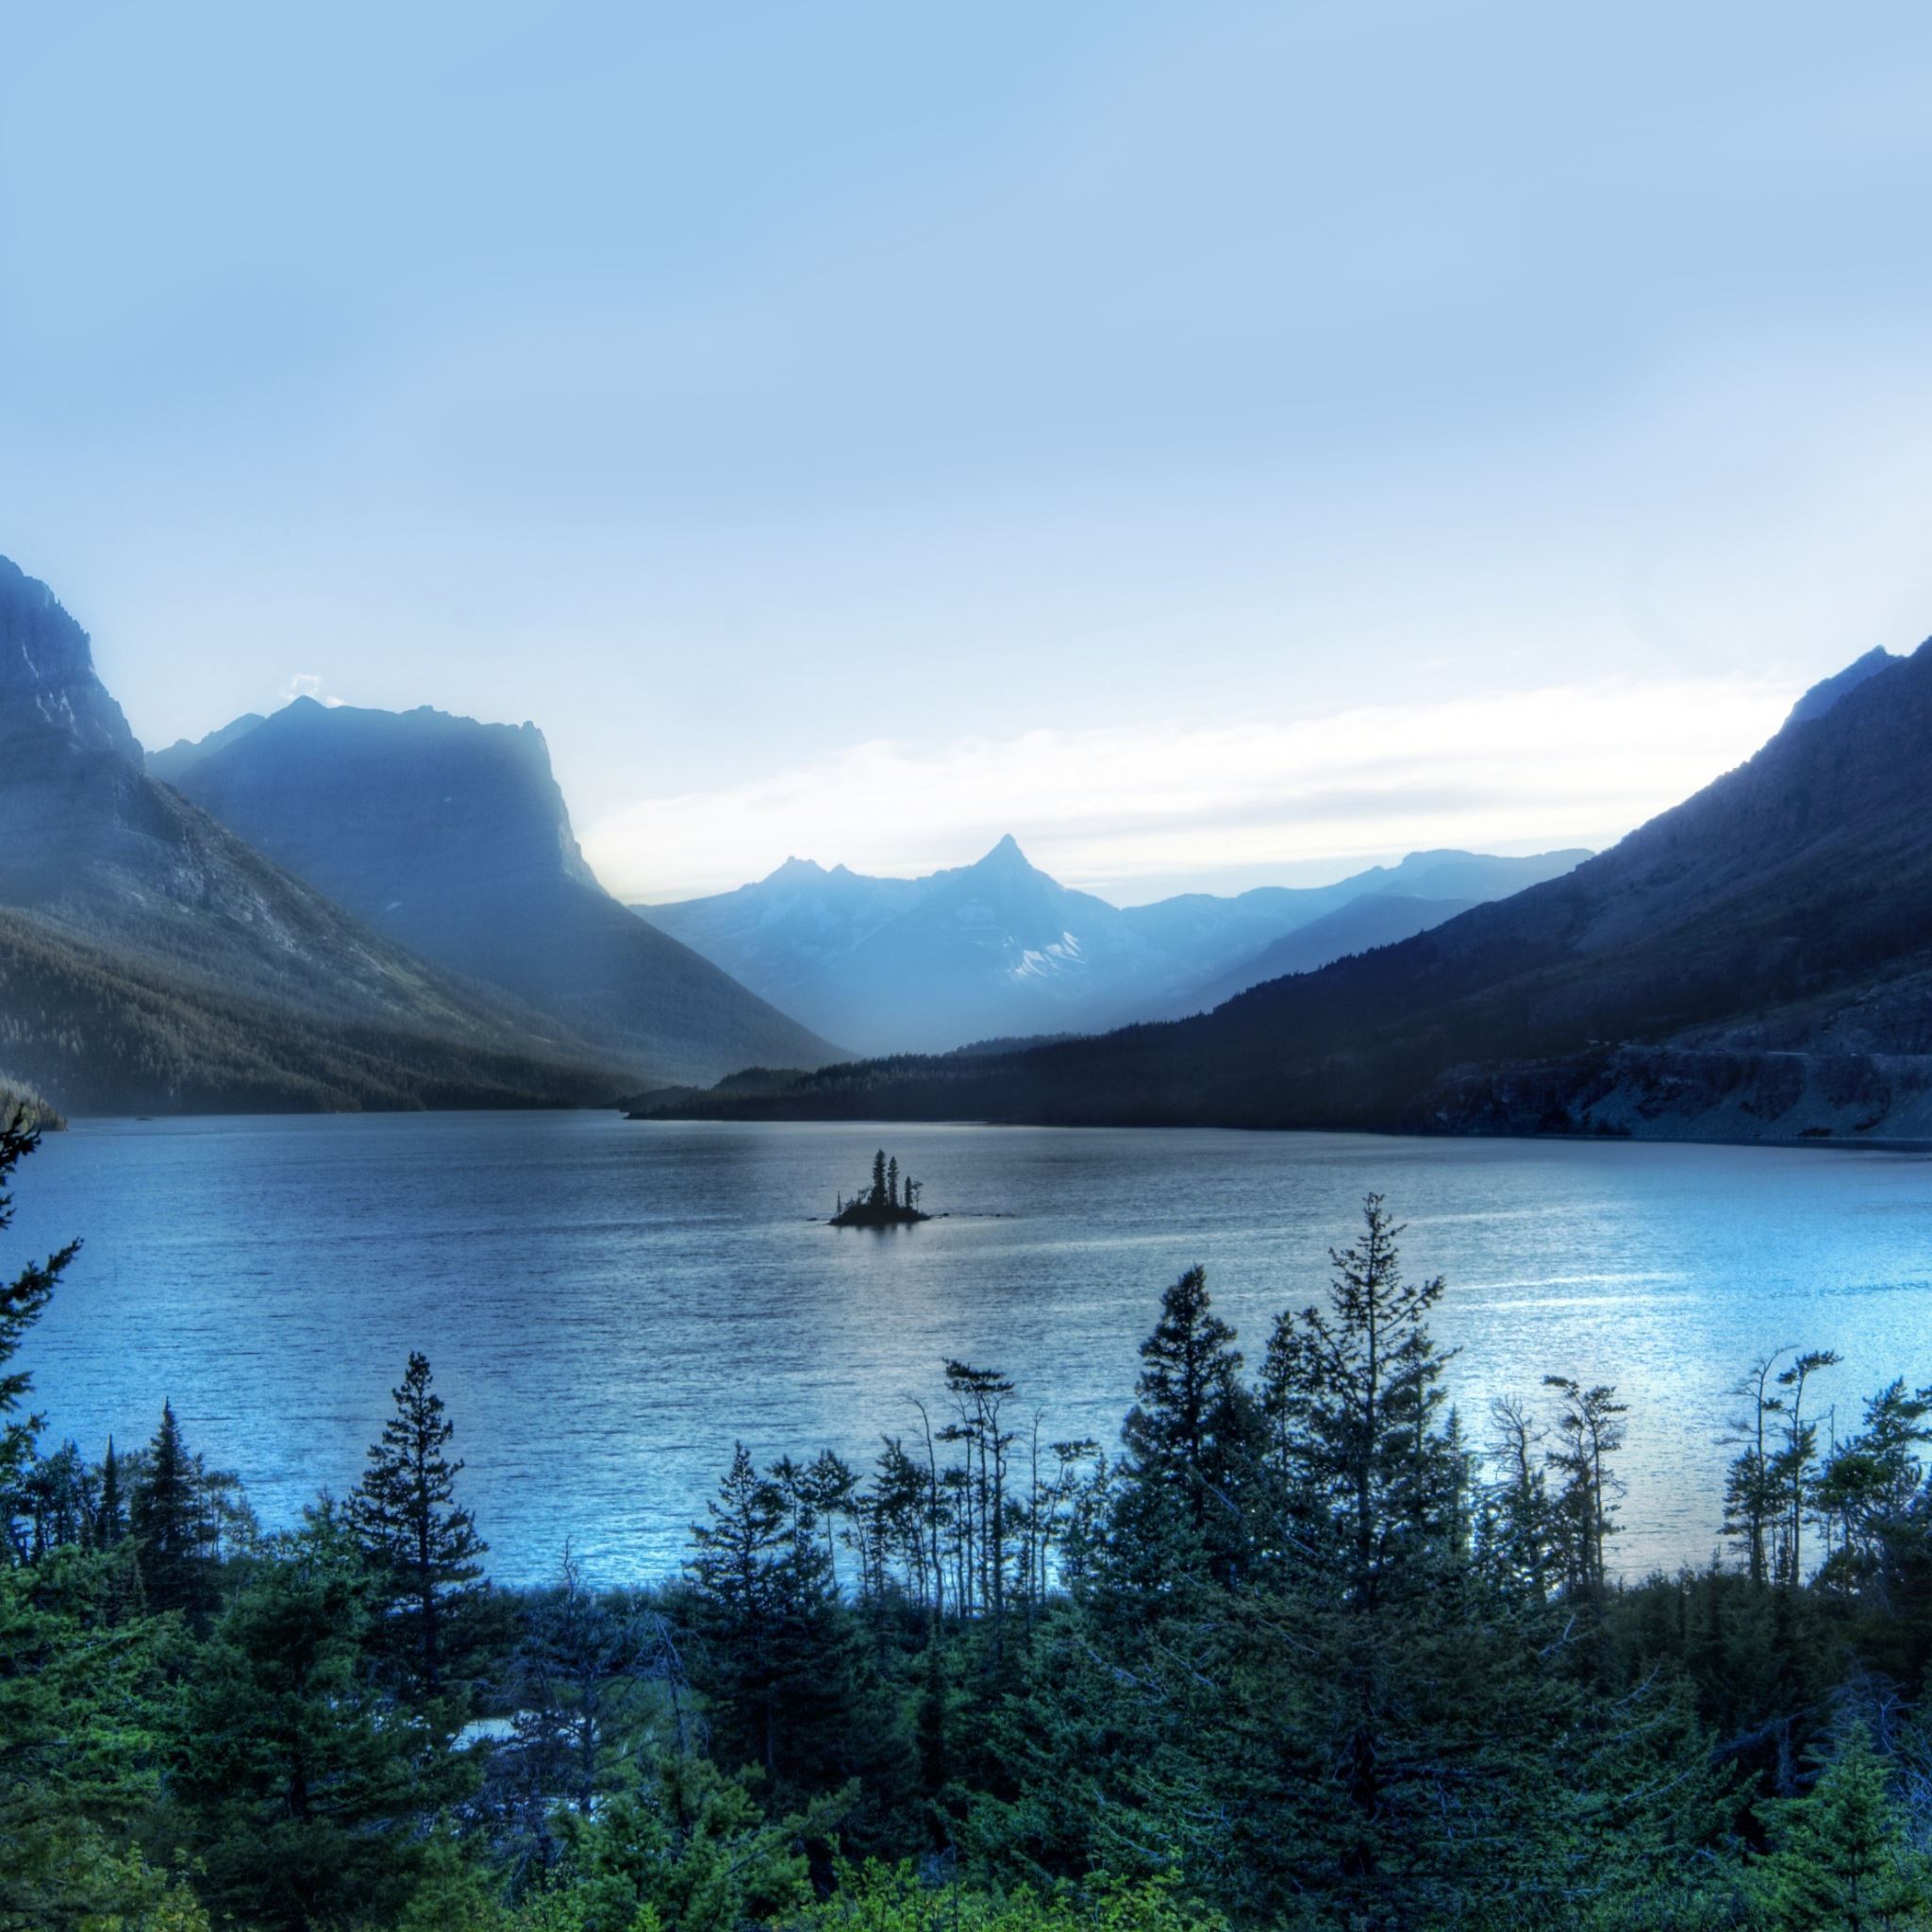 Morning at glacier national park iPad Air wallpaper 